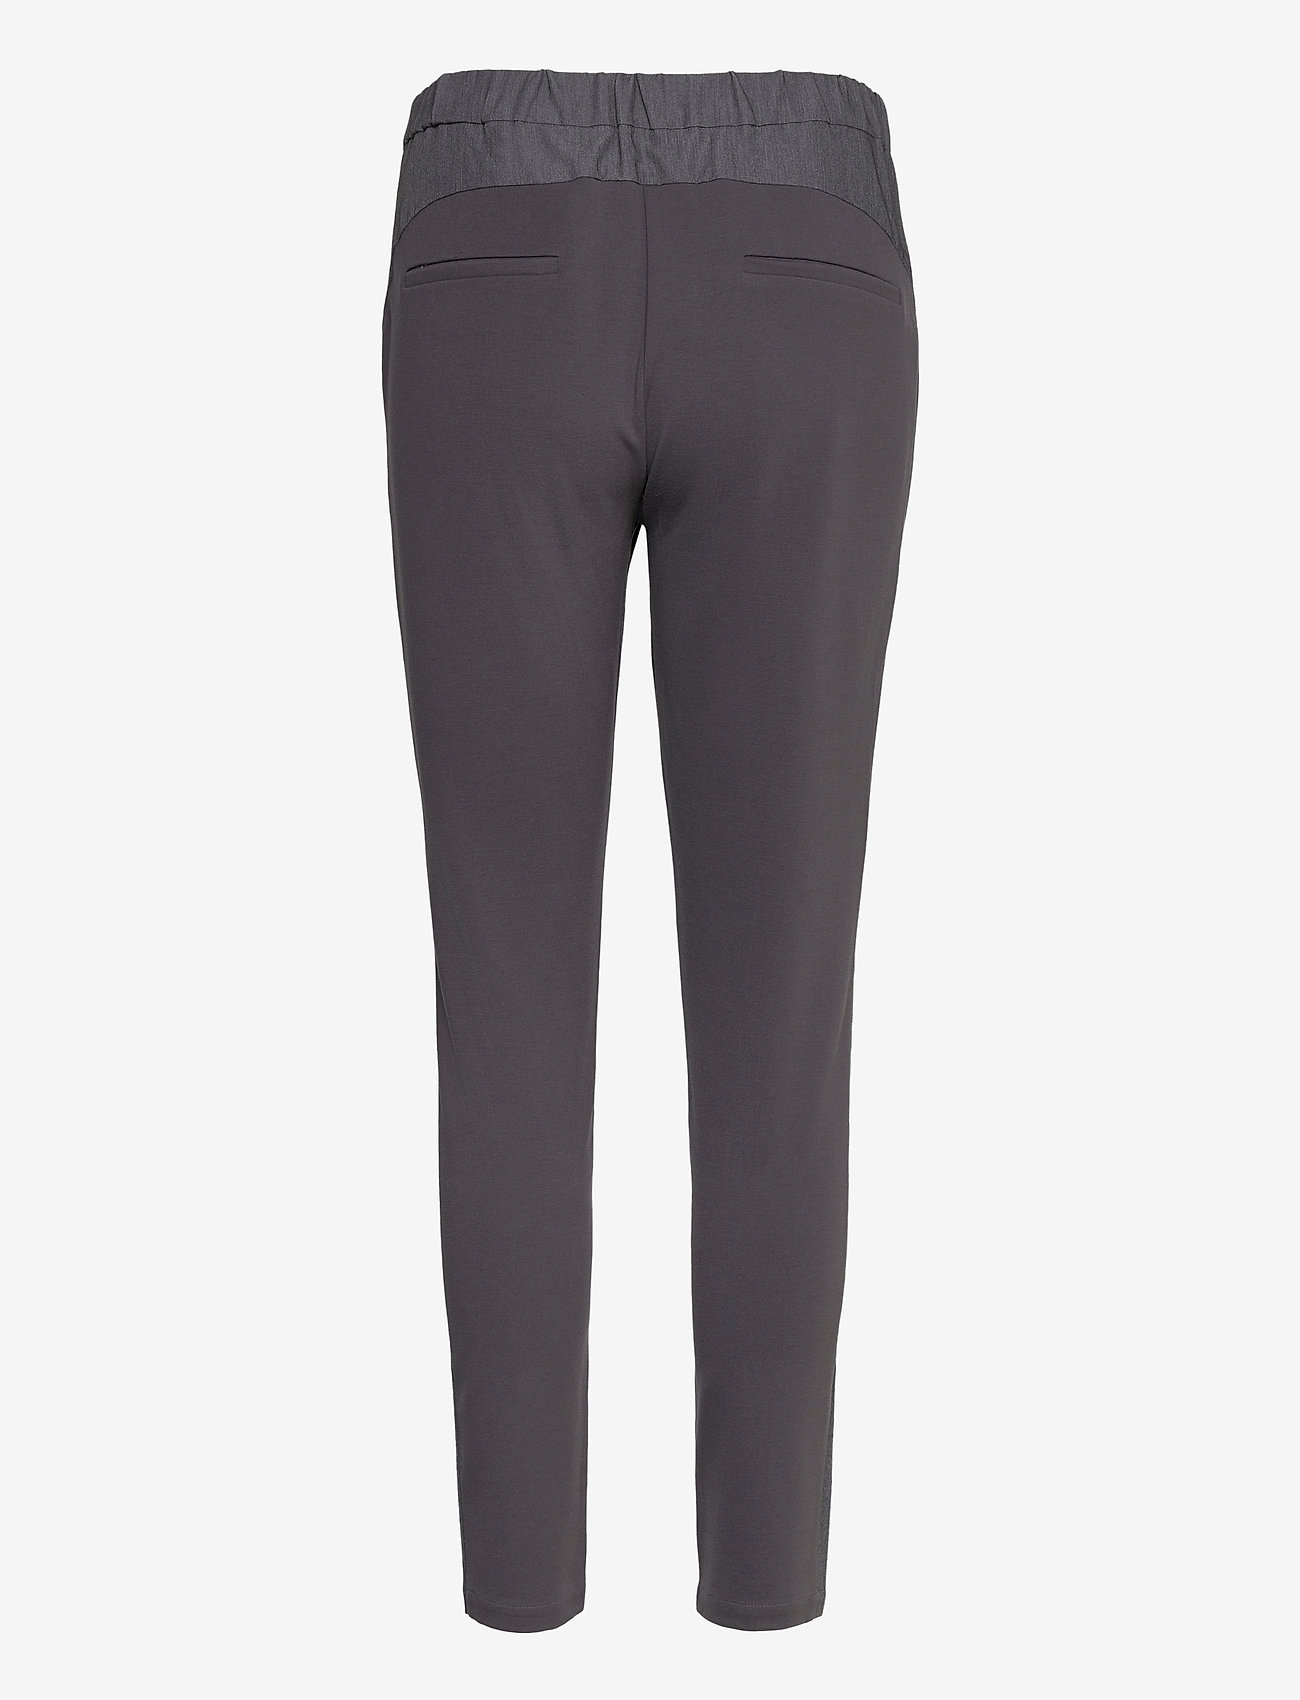 Coster Copenhagen - Pants w. Jersey back - Luca - slim fit trousers - grey melange - 1